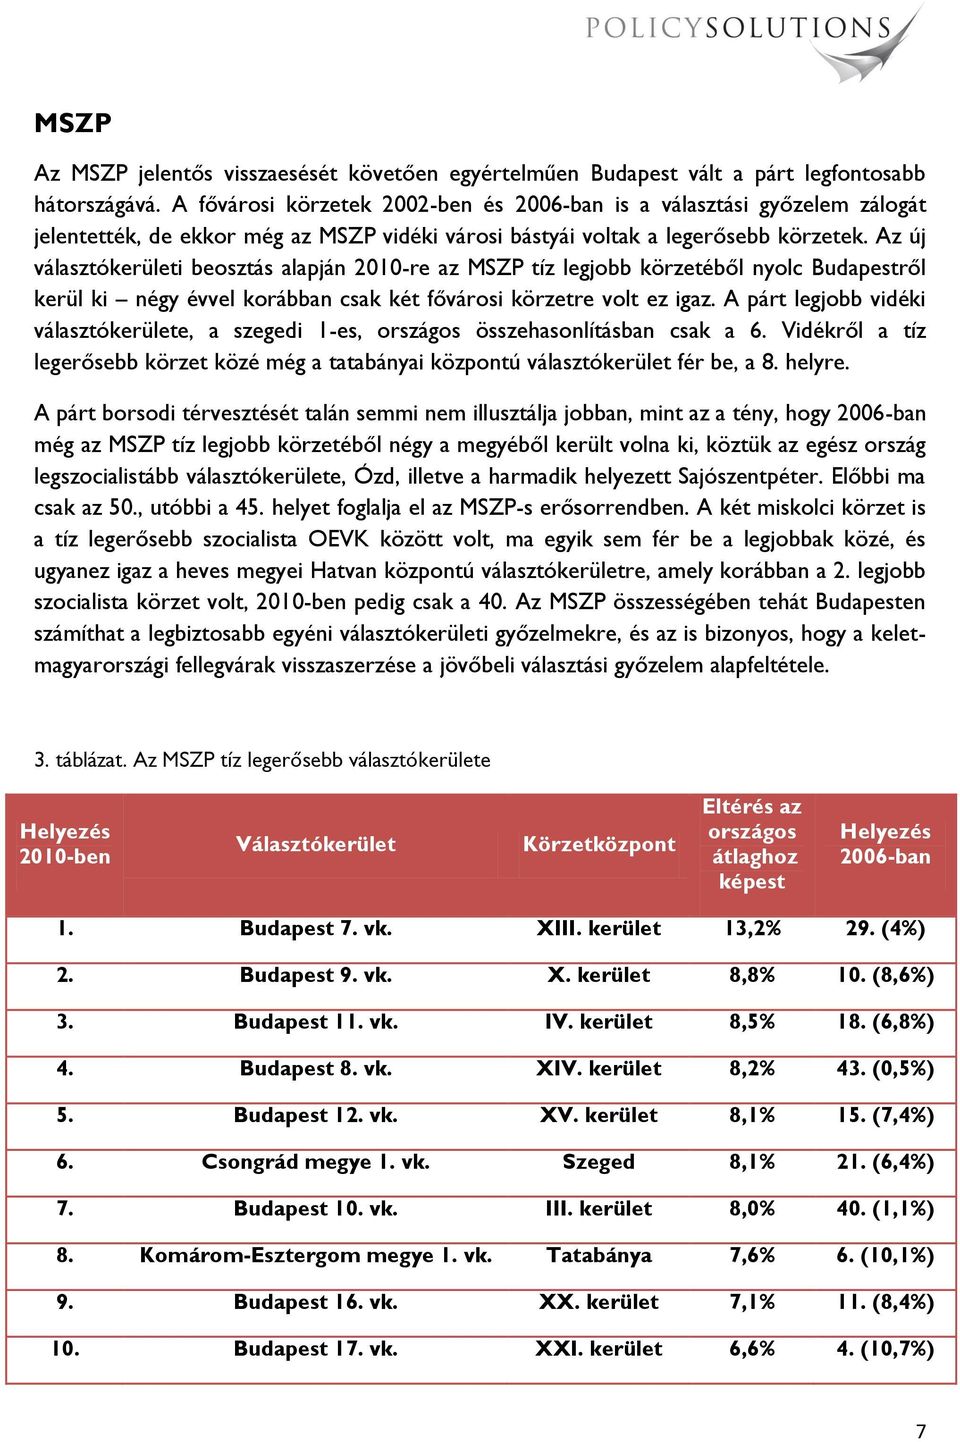 Az új választókerületi beosztás alapján 2010-re az MSZP tíz legjobb körzetéből nyolc Budapestről kerül ki négy évvel korábban csak két fővárosi körzetre volt ez igaz.